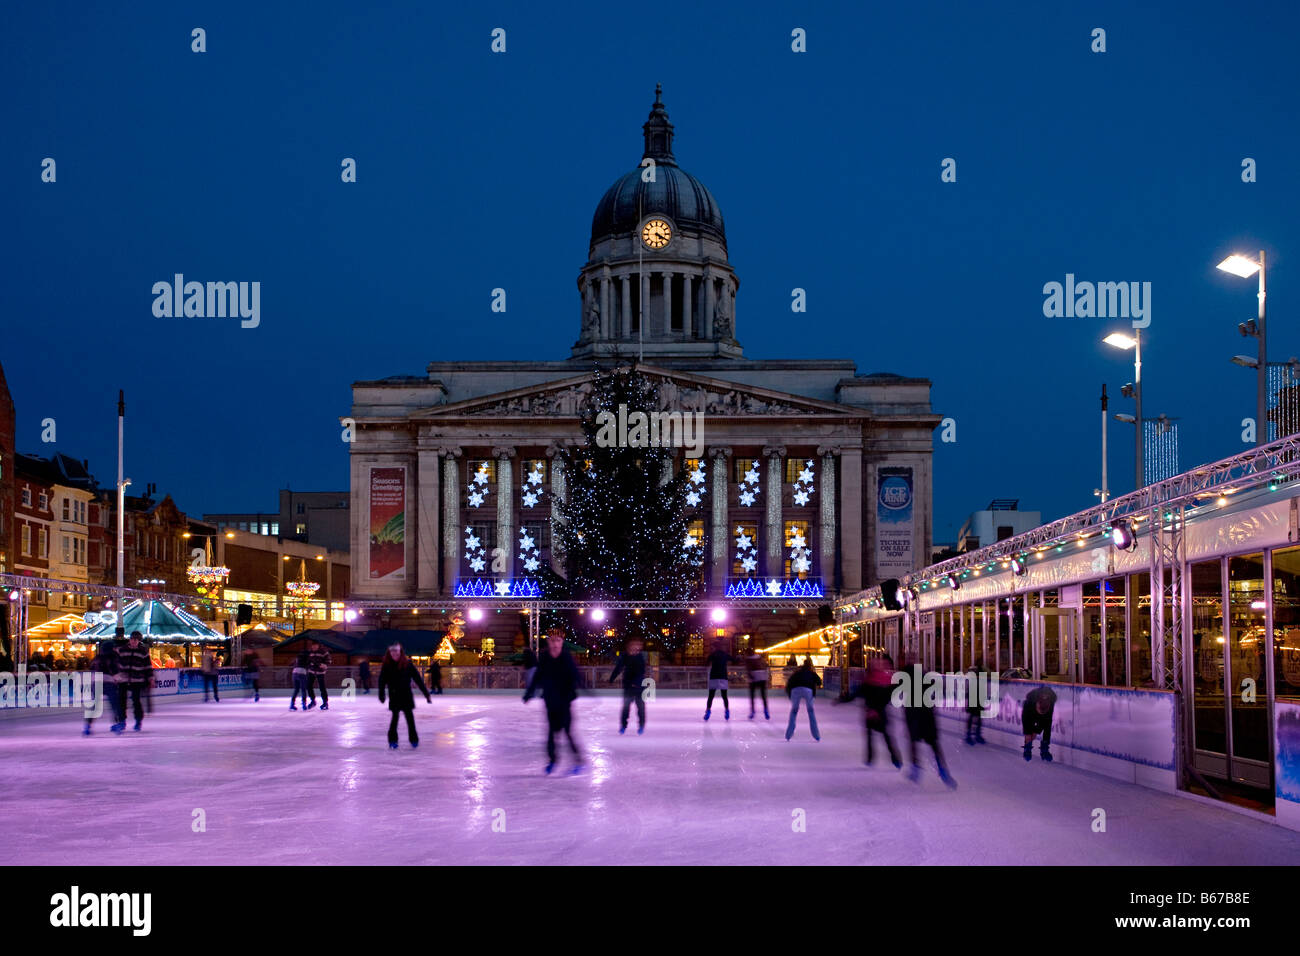 Nottingham-Rathaus mit Weihnachtsbeleuchtung und Eisbahn, england Stockfoto